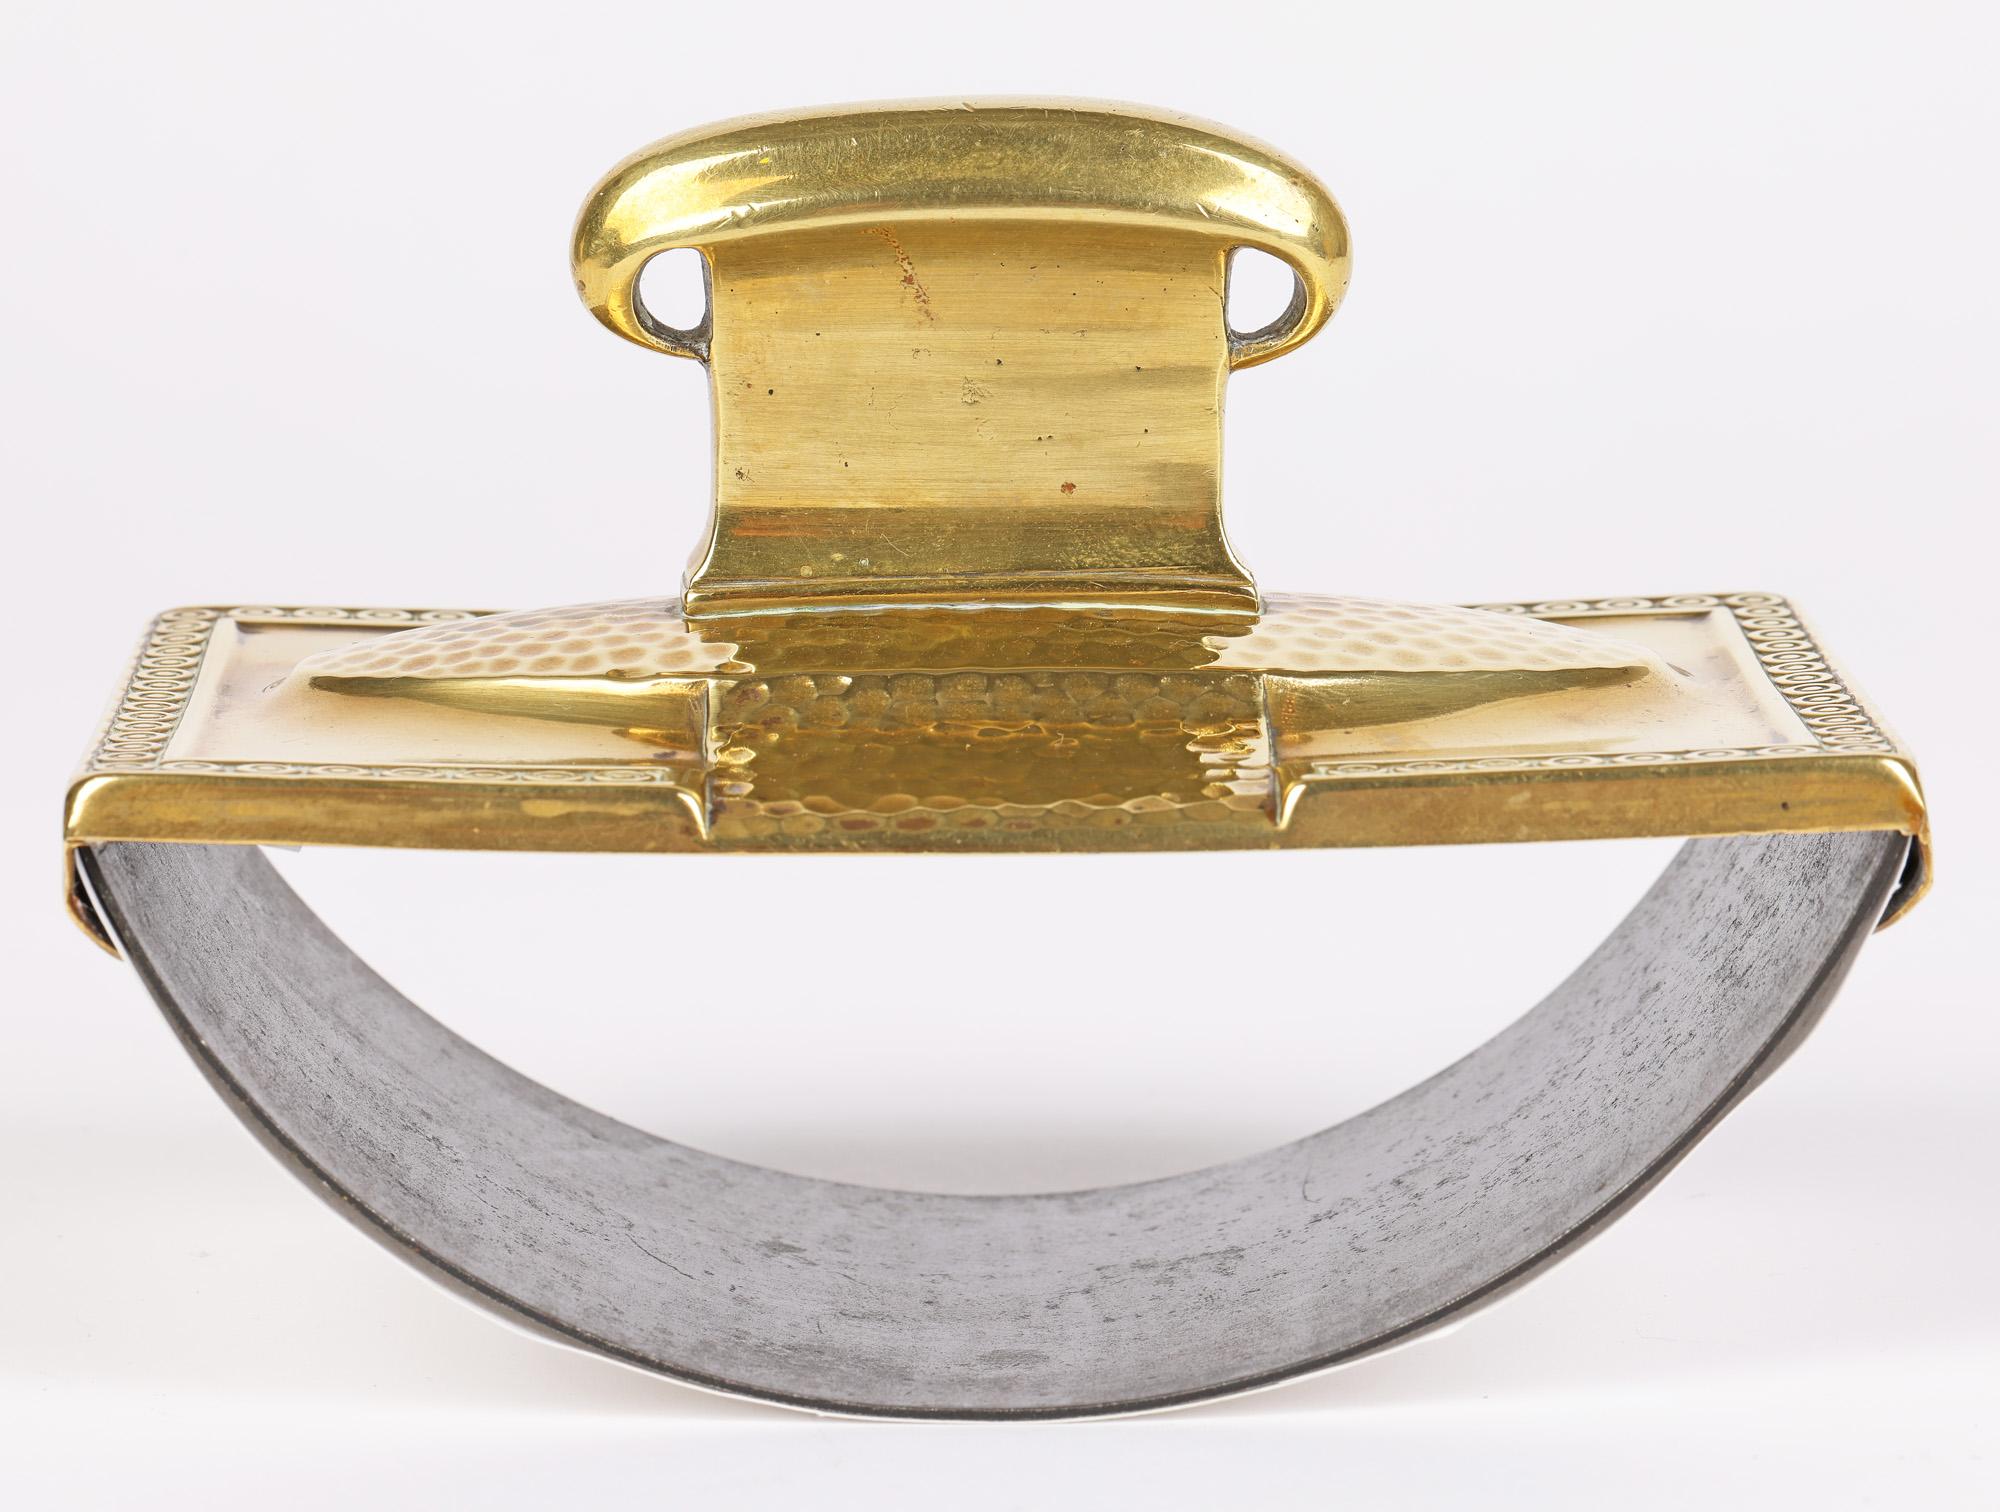 WMF German Jugendstil Brass Roller Desk Blotter In Good Condition For Sale In Bishop's Stortford, Hertfordshire